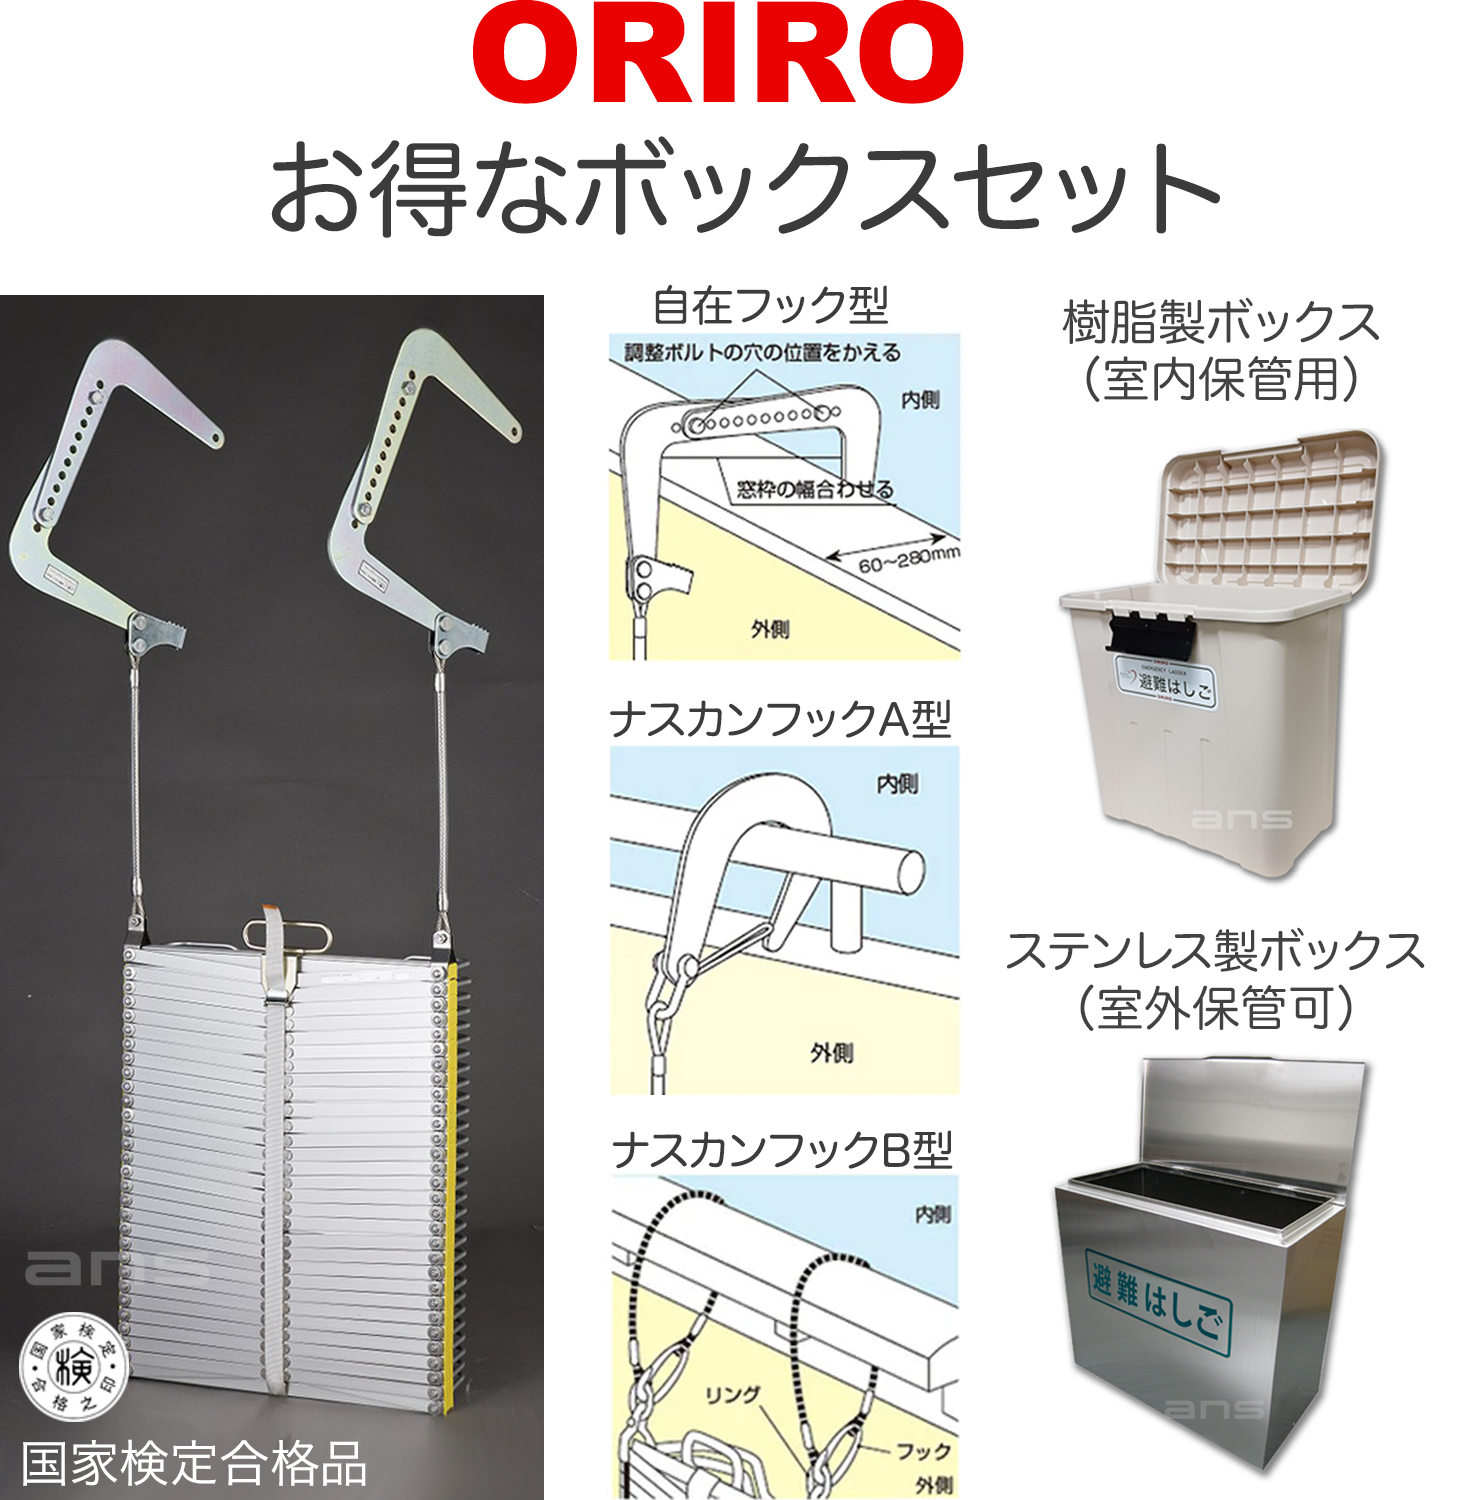 お得なボックスセット。ORIROアルミ製避難はしご 7型 + 収納ボックス。国家検定合格品。設置可能範囲の高さ：自在フック7